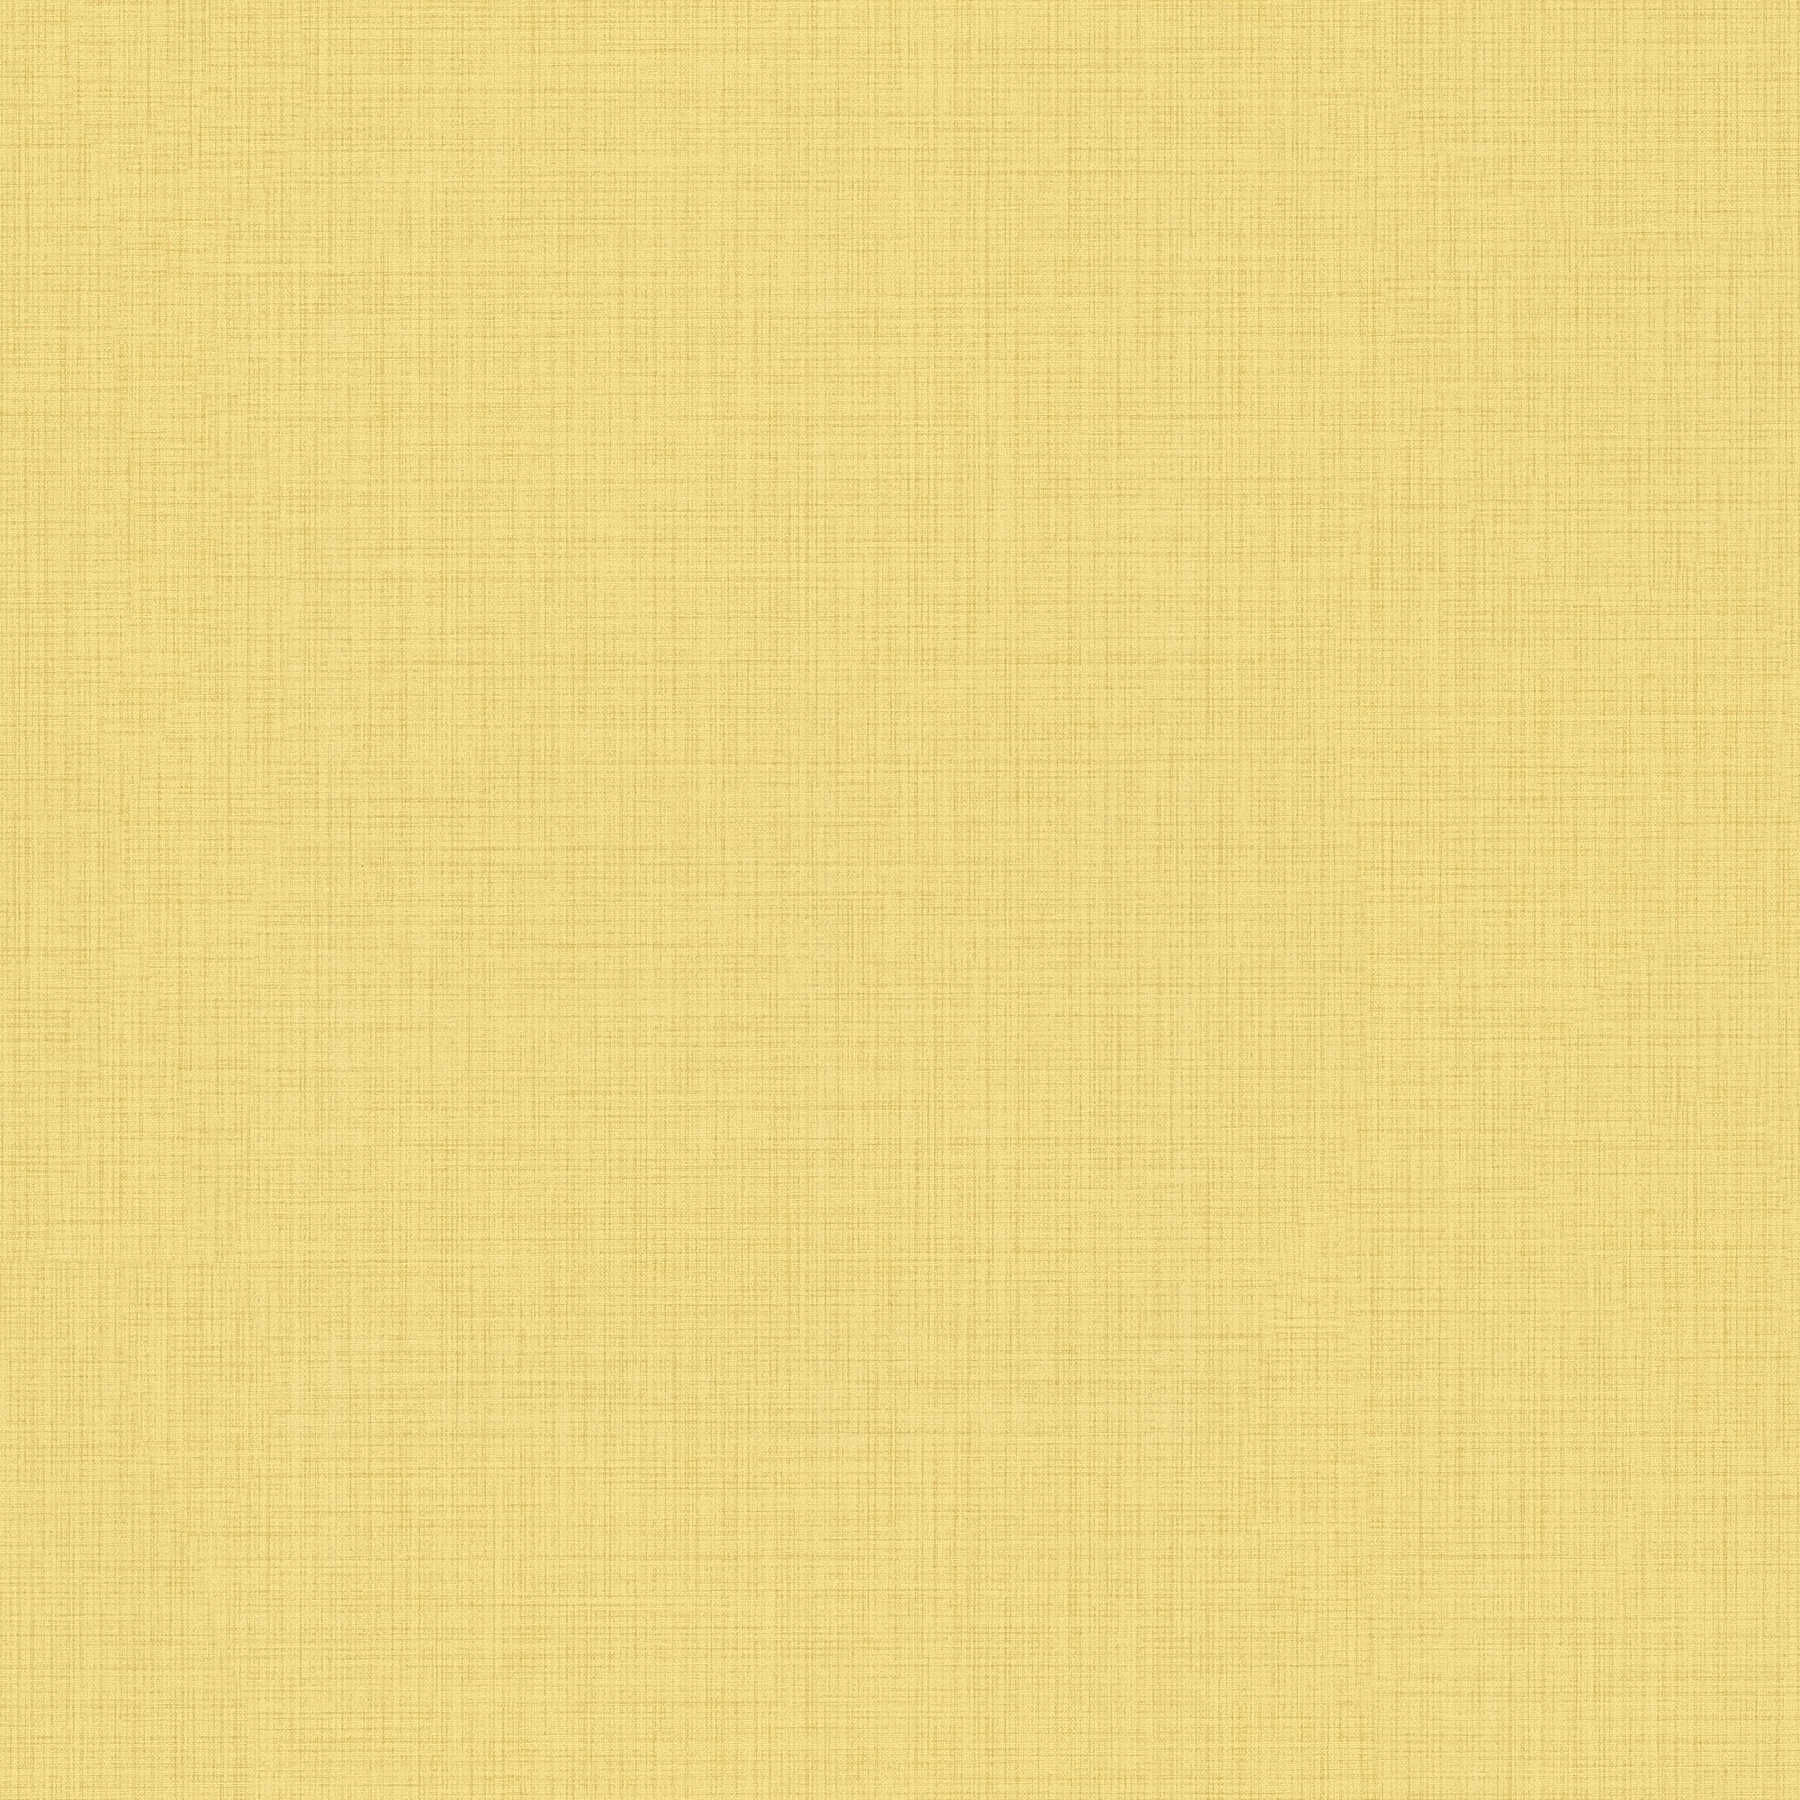 Carta da parati gialla monocromatica con tratteggio effetto lino
